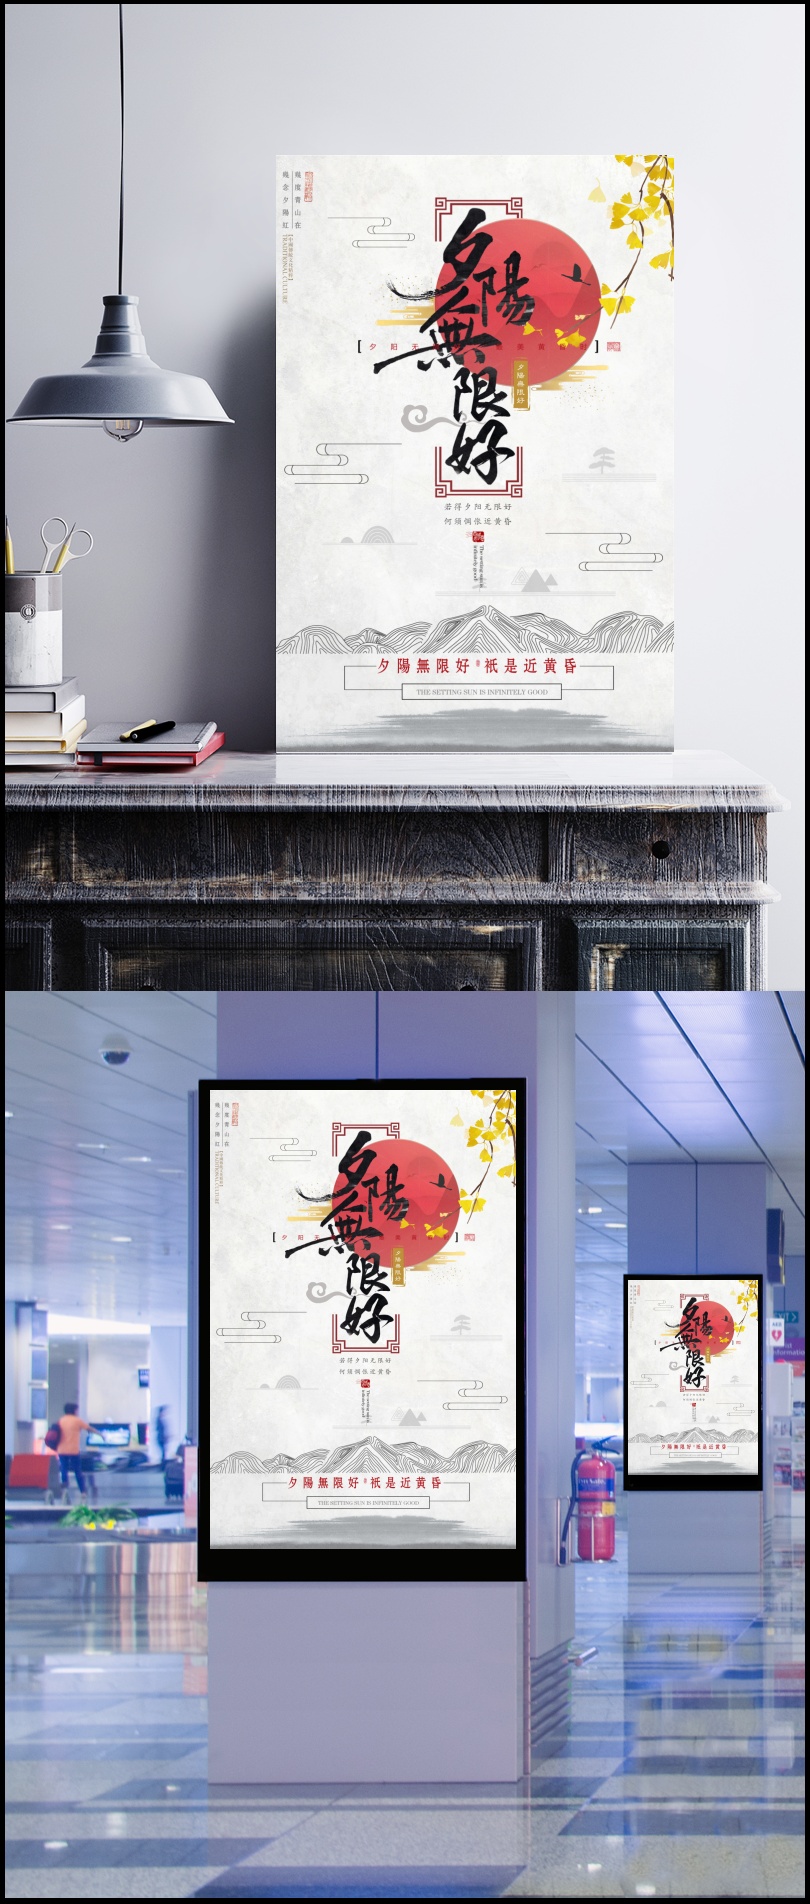 夕阳无限好中国风创意海报图片